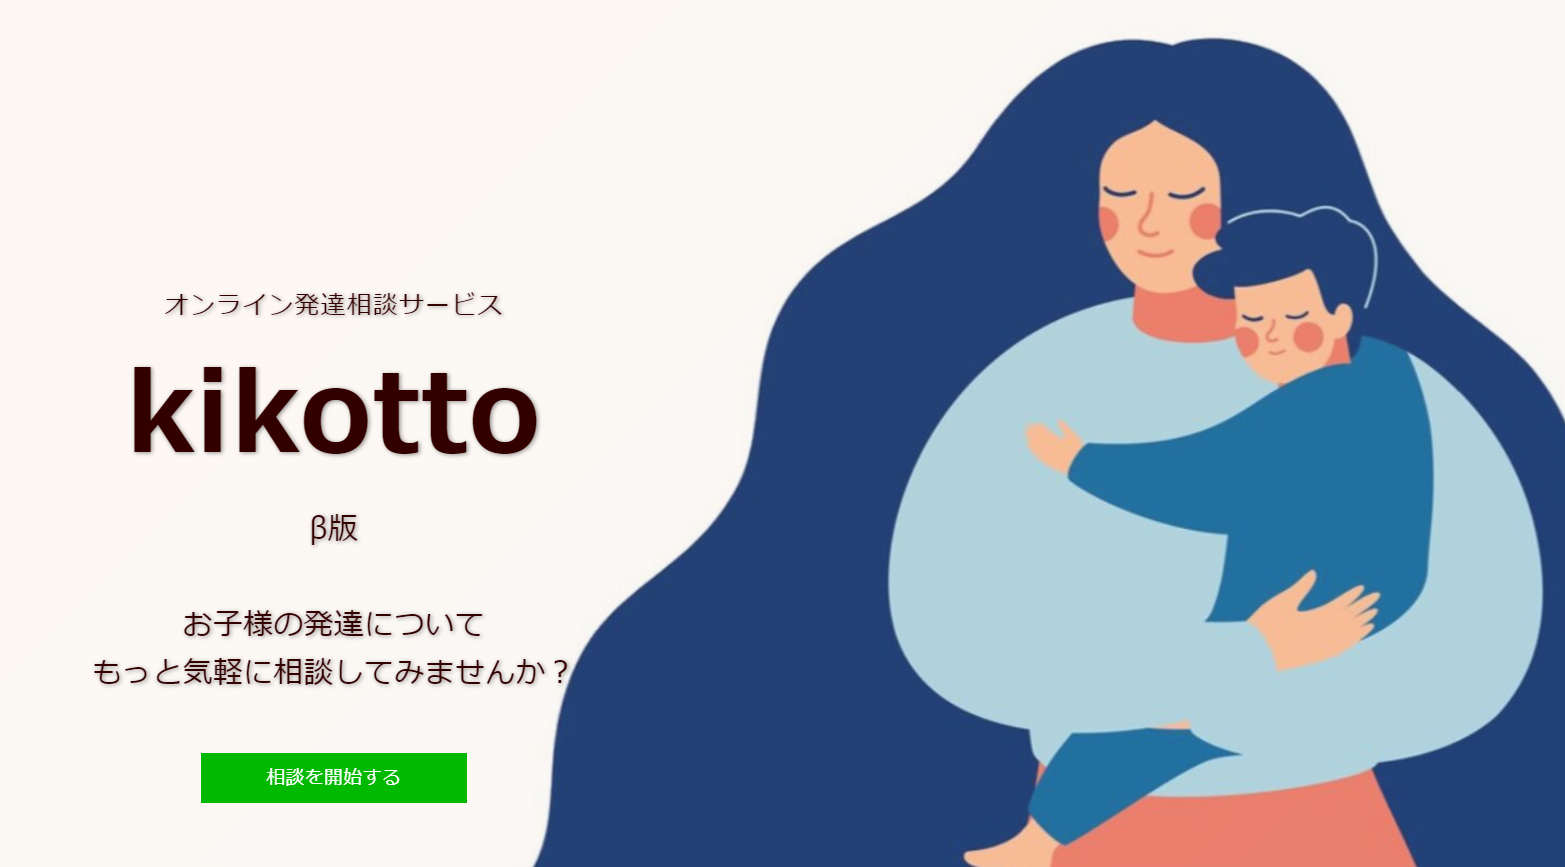 オンライン発達相談サービス「kikotto」